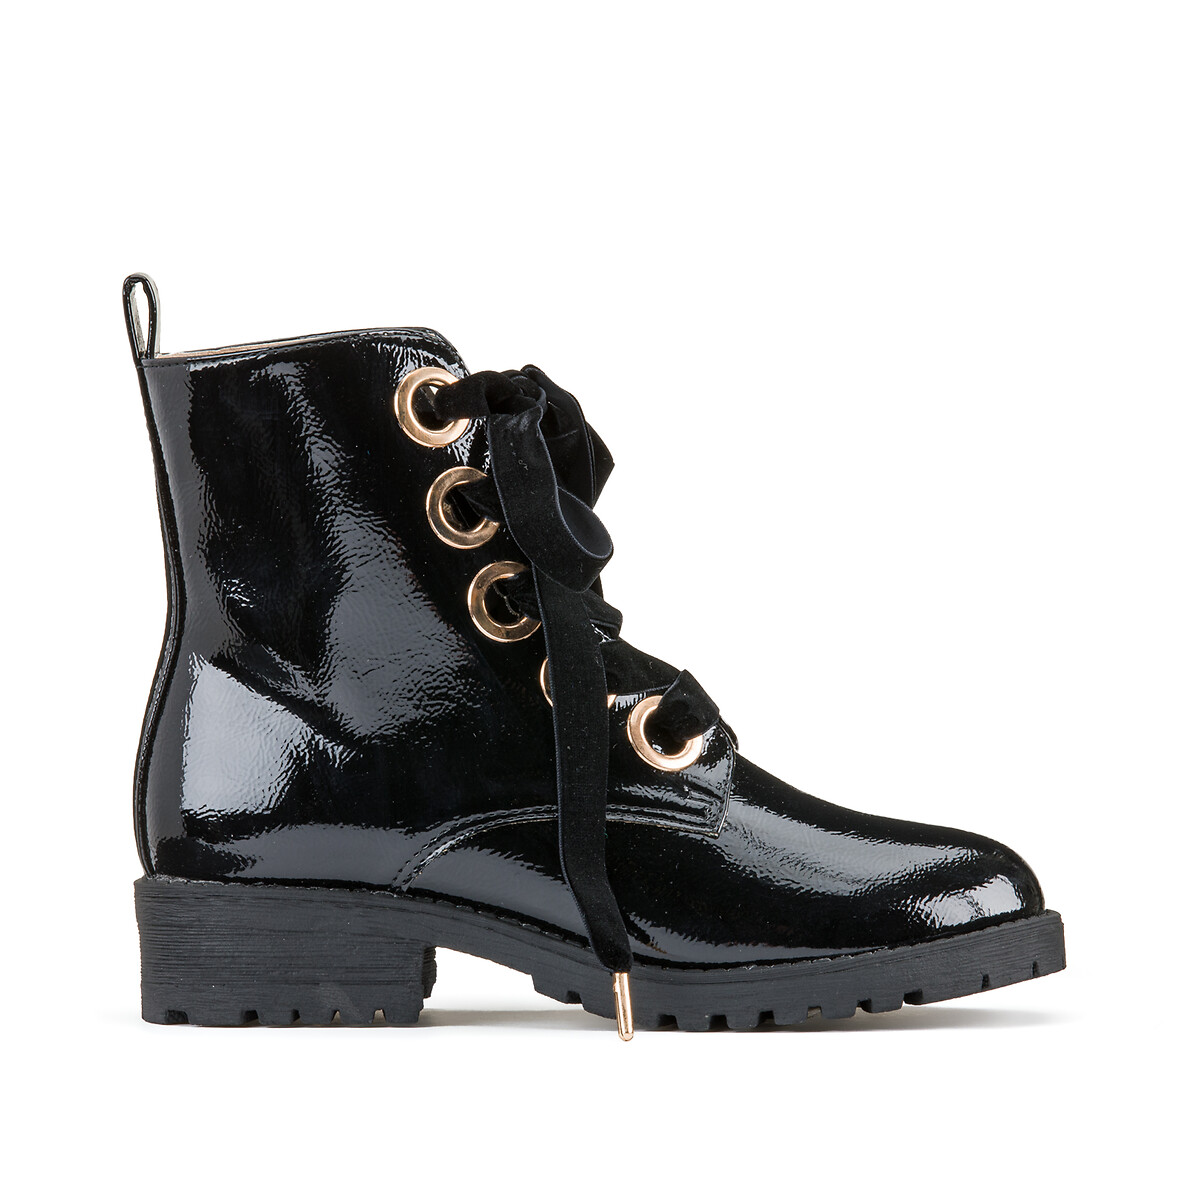 Gelakte boots met veters, goudkleurige zwart La Redoute Collections | La Redoute